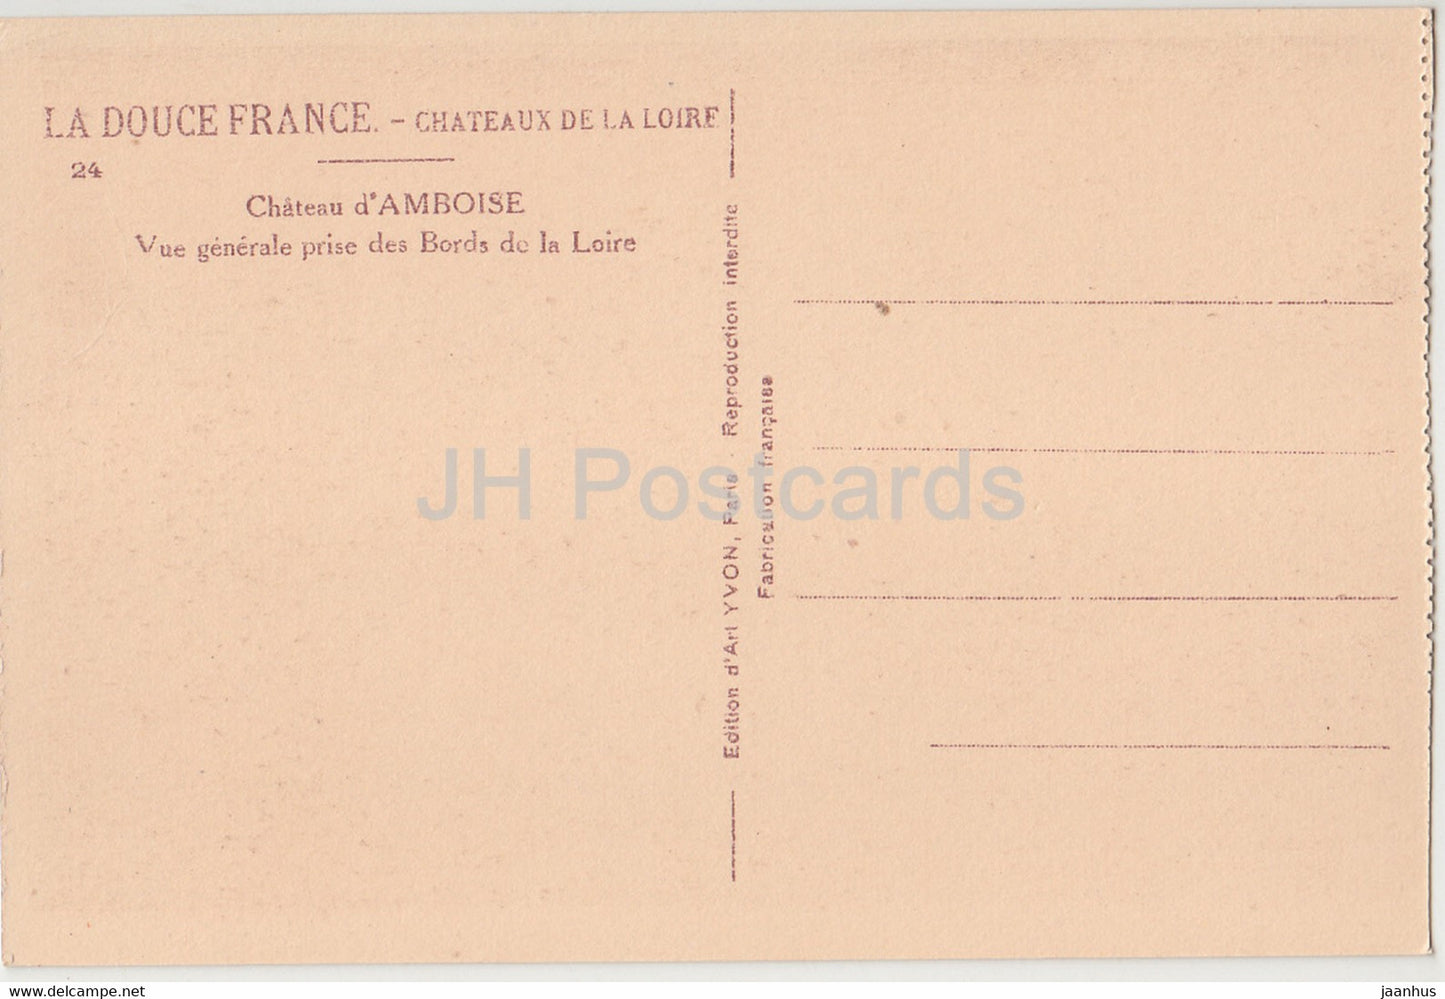 Château d'Amboise - Vue Générale prise des Bords de la Loire - 24 - château - carte postale ancienne - France - inutilisé